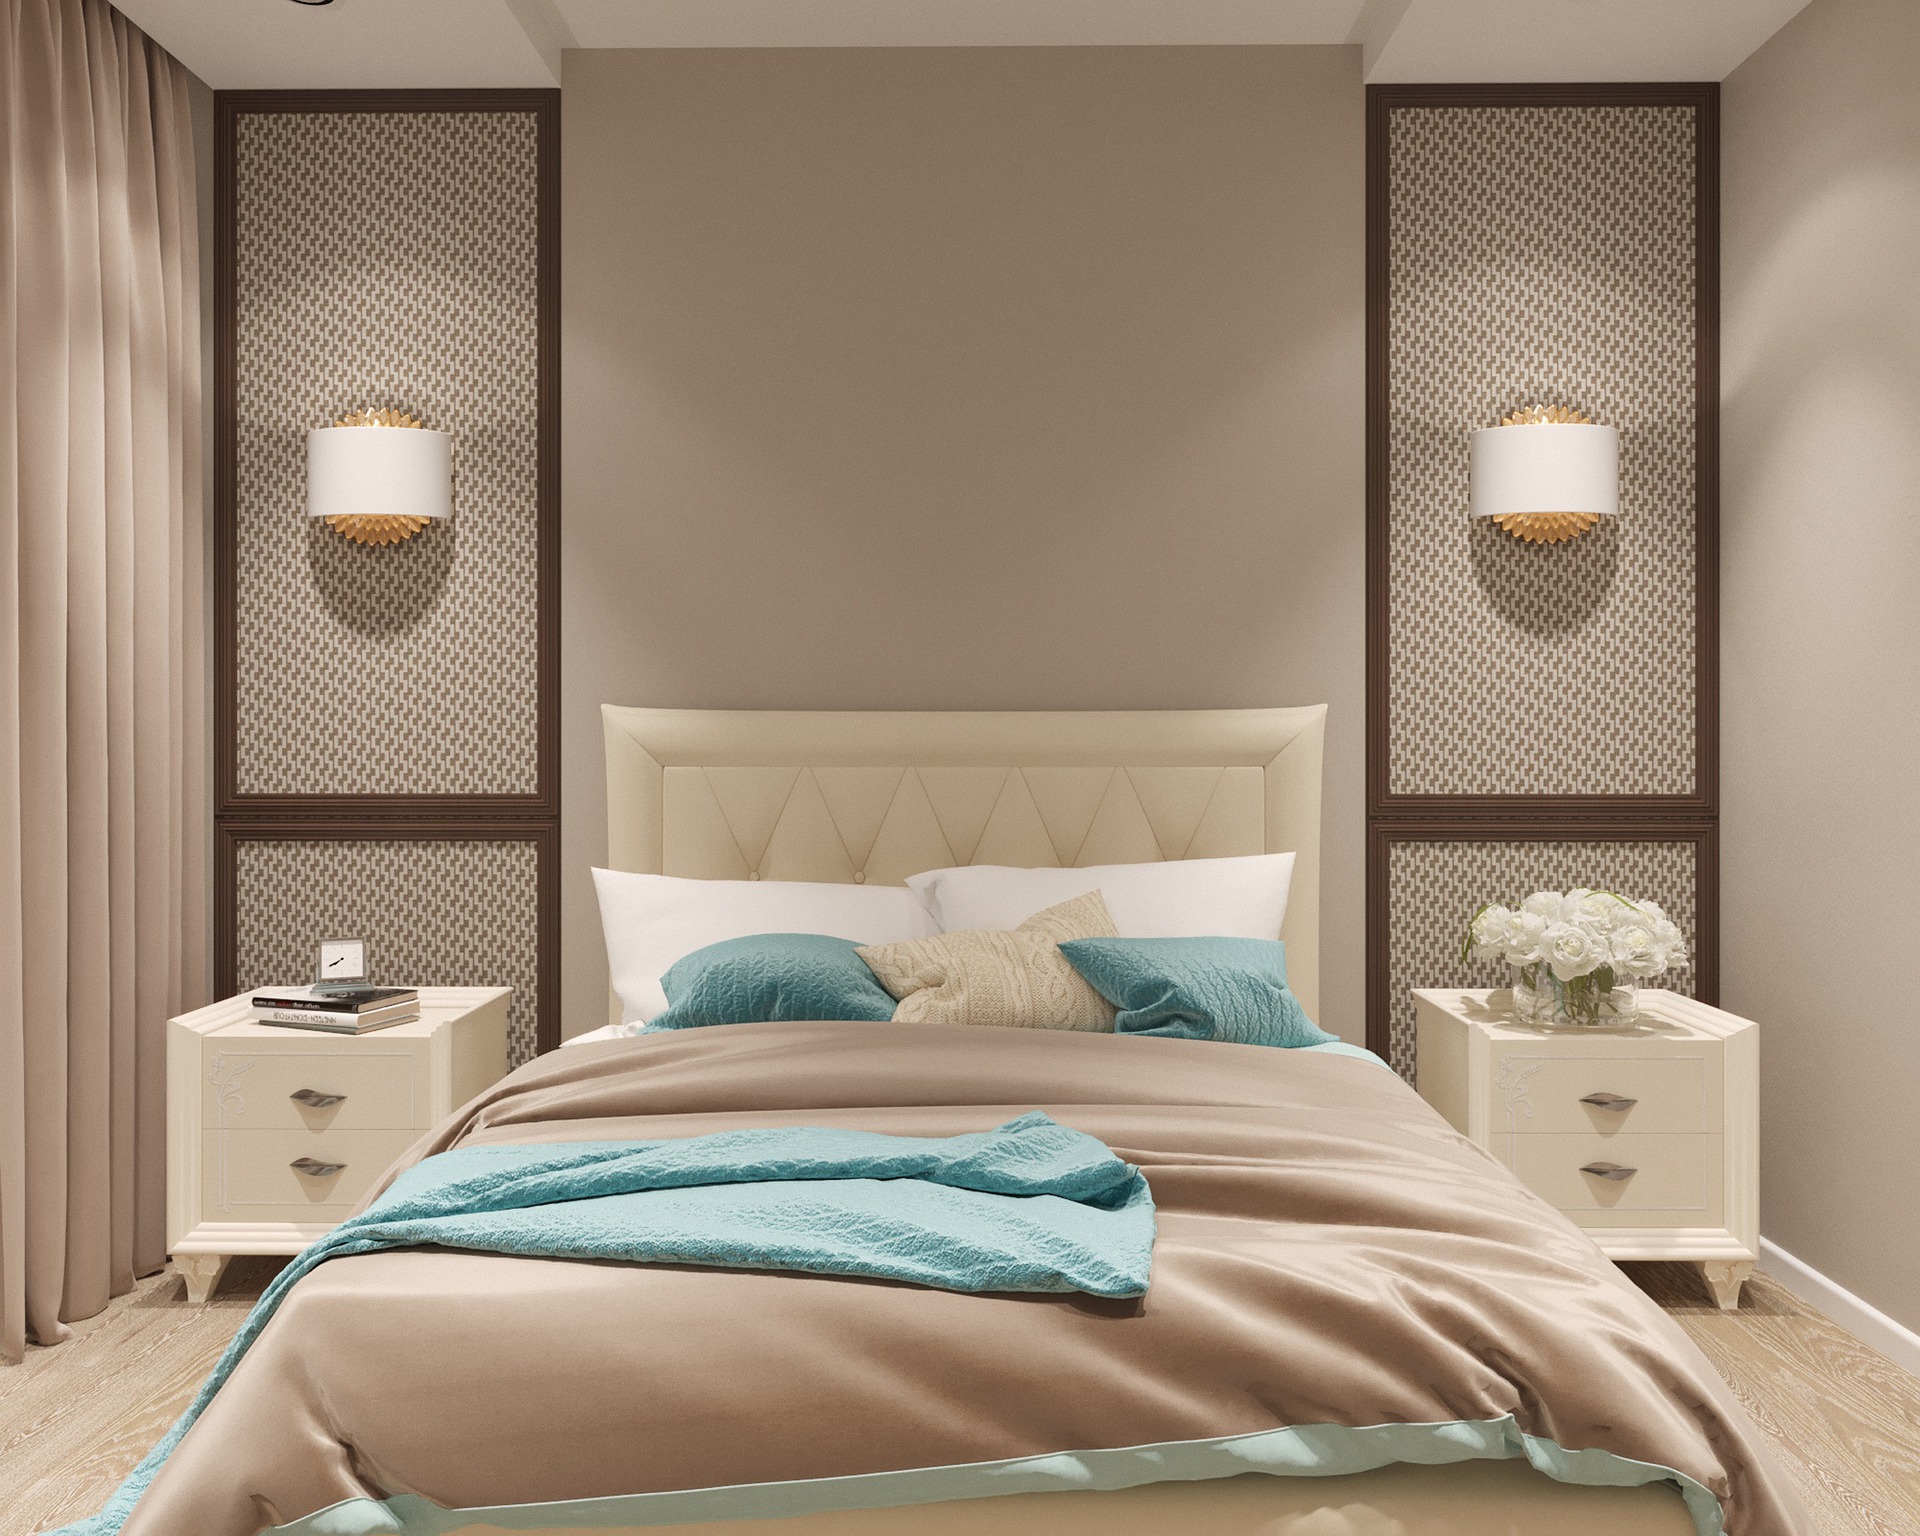 Imagem de um quarto pequeno com uma cama de casal no centro, duas mesinha de cabeceira, paredes na cor de creme e duas luminárias na parede 